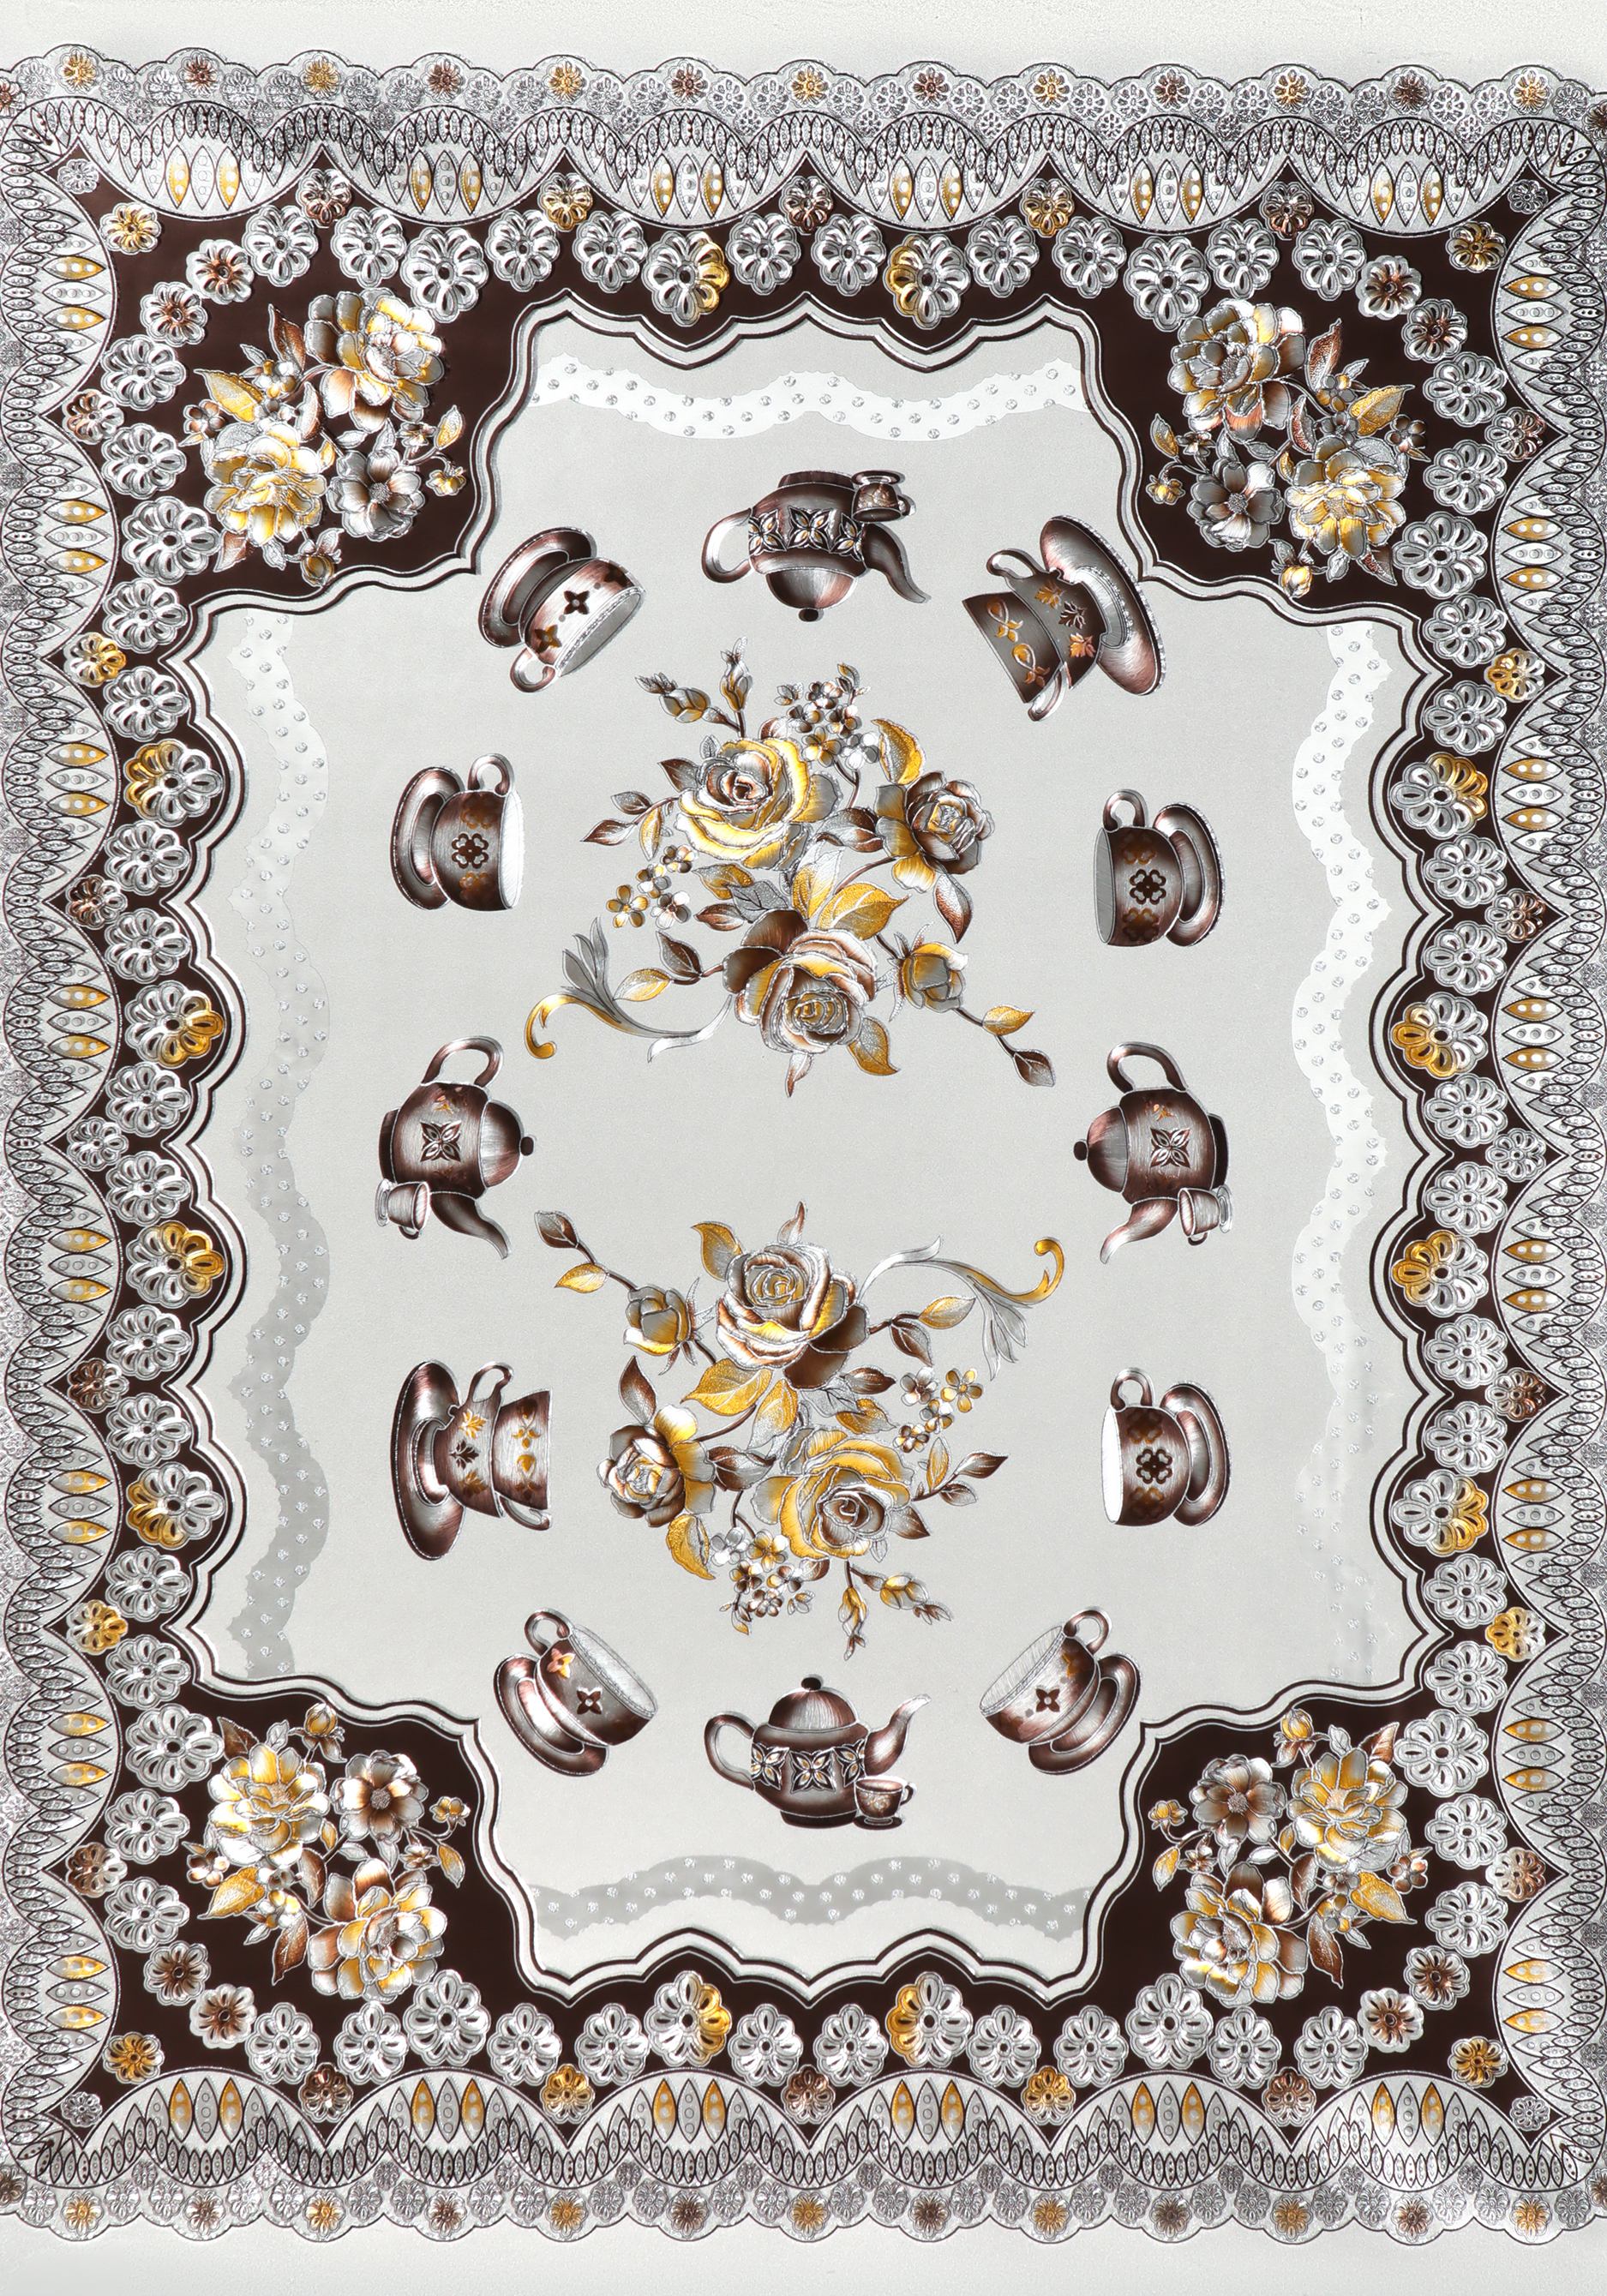 Скатерть "Тамада" Колорит, цвет серый, размер 120*150 - фото 10